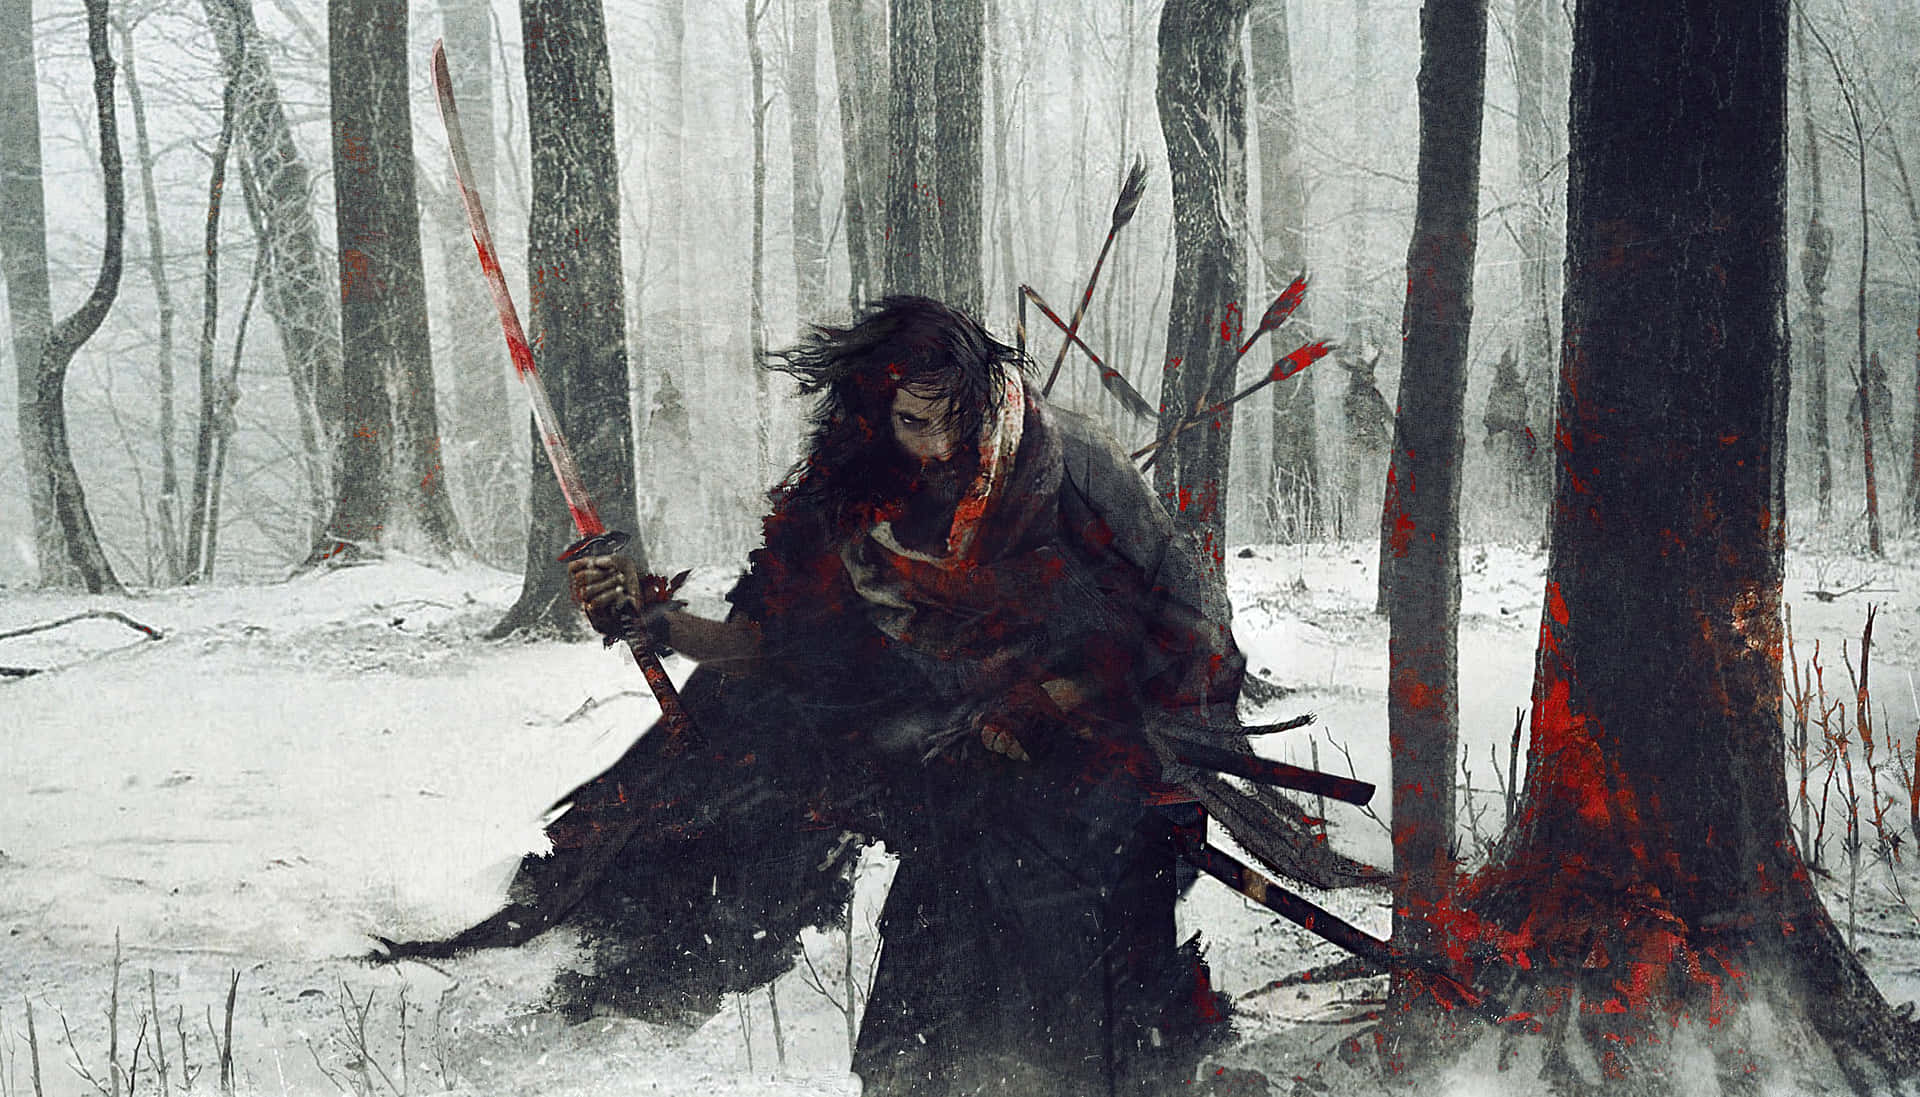 A fierce Ronin warrior in an intense battle scene Wallpaper